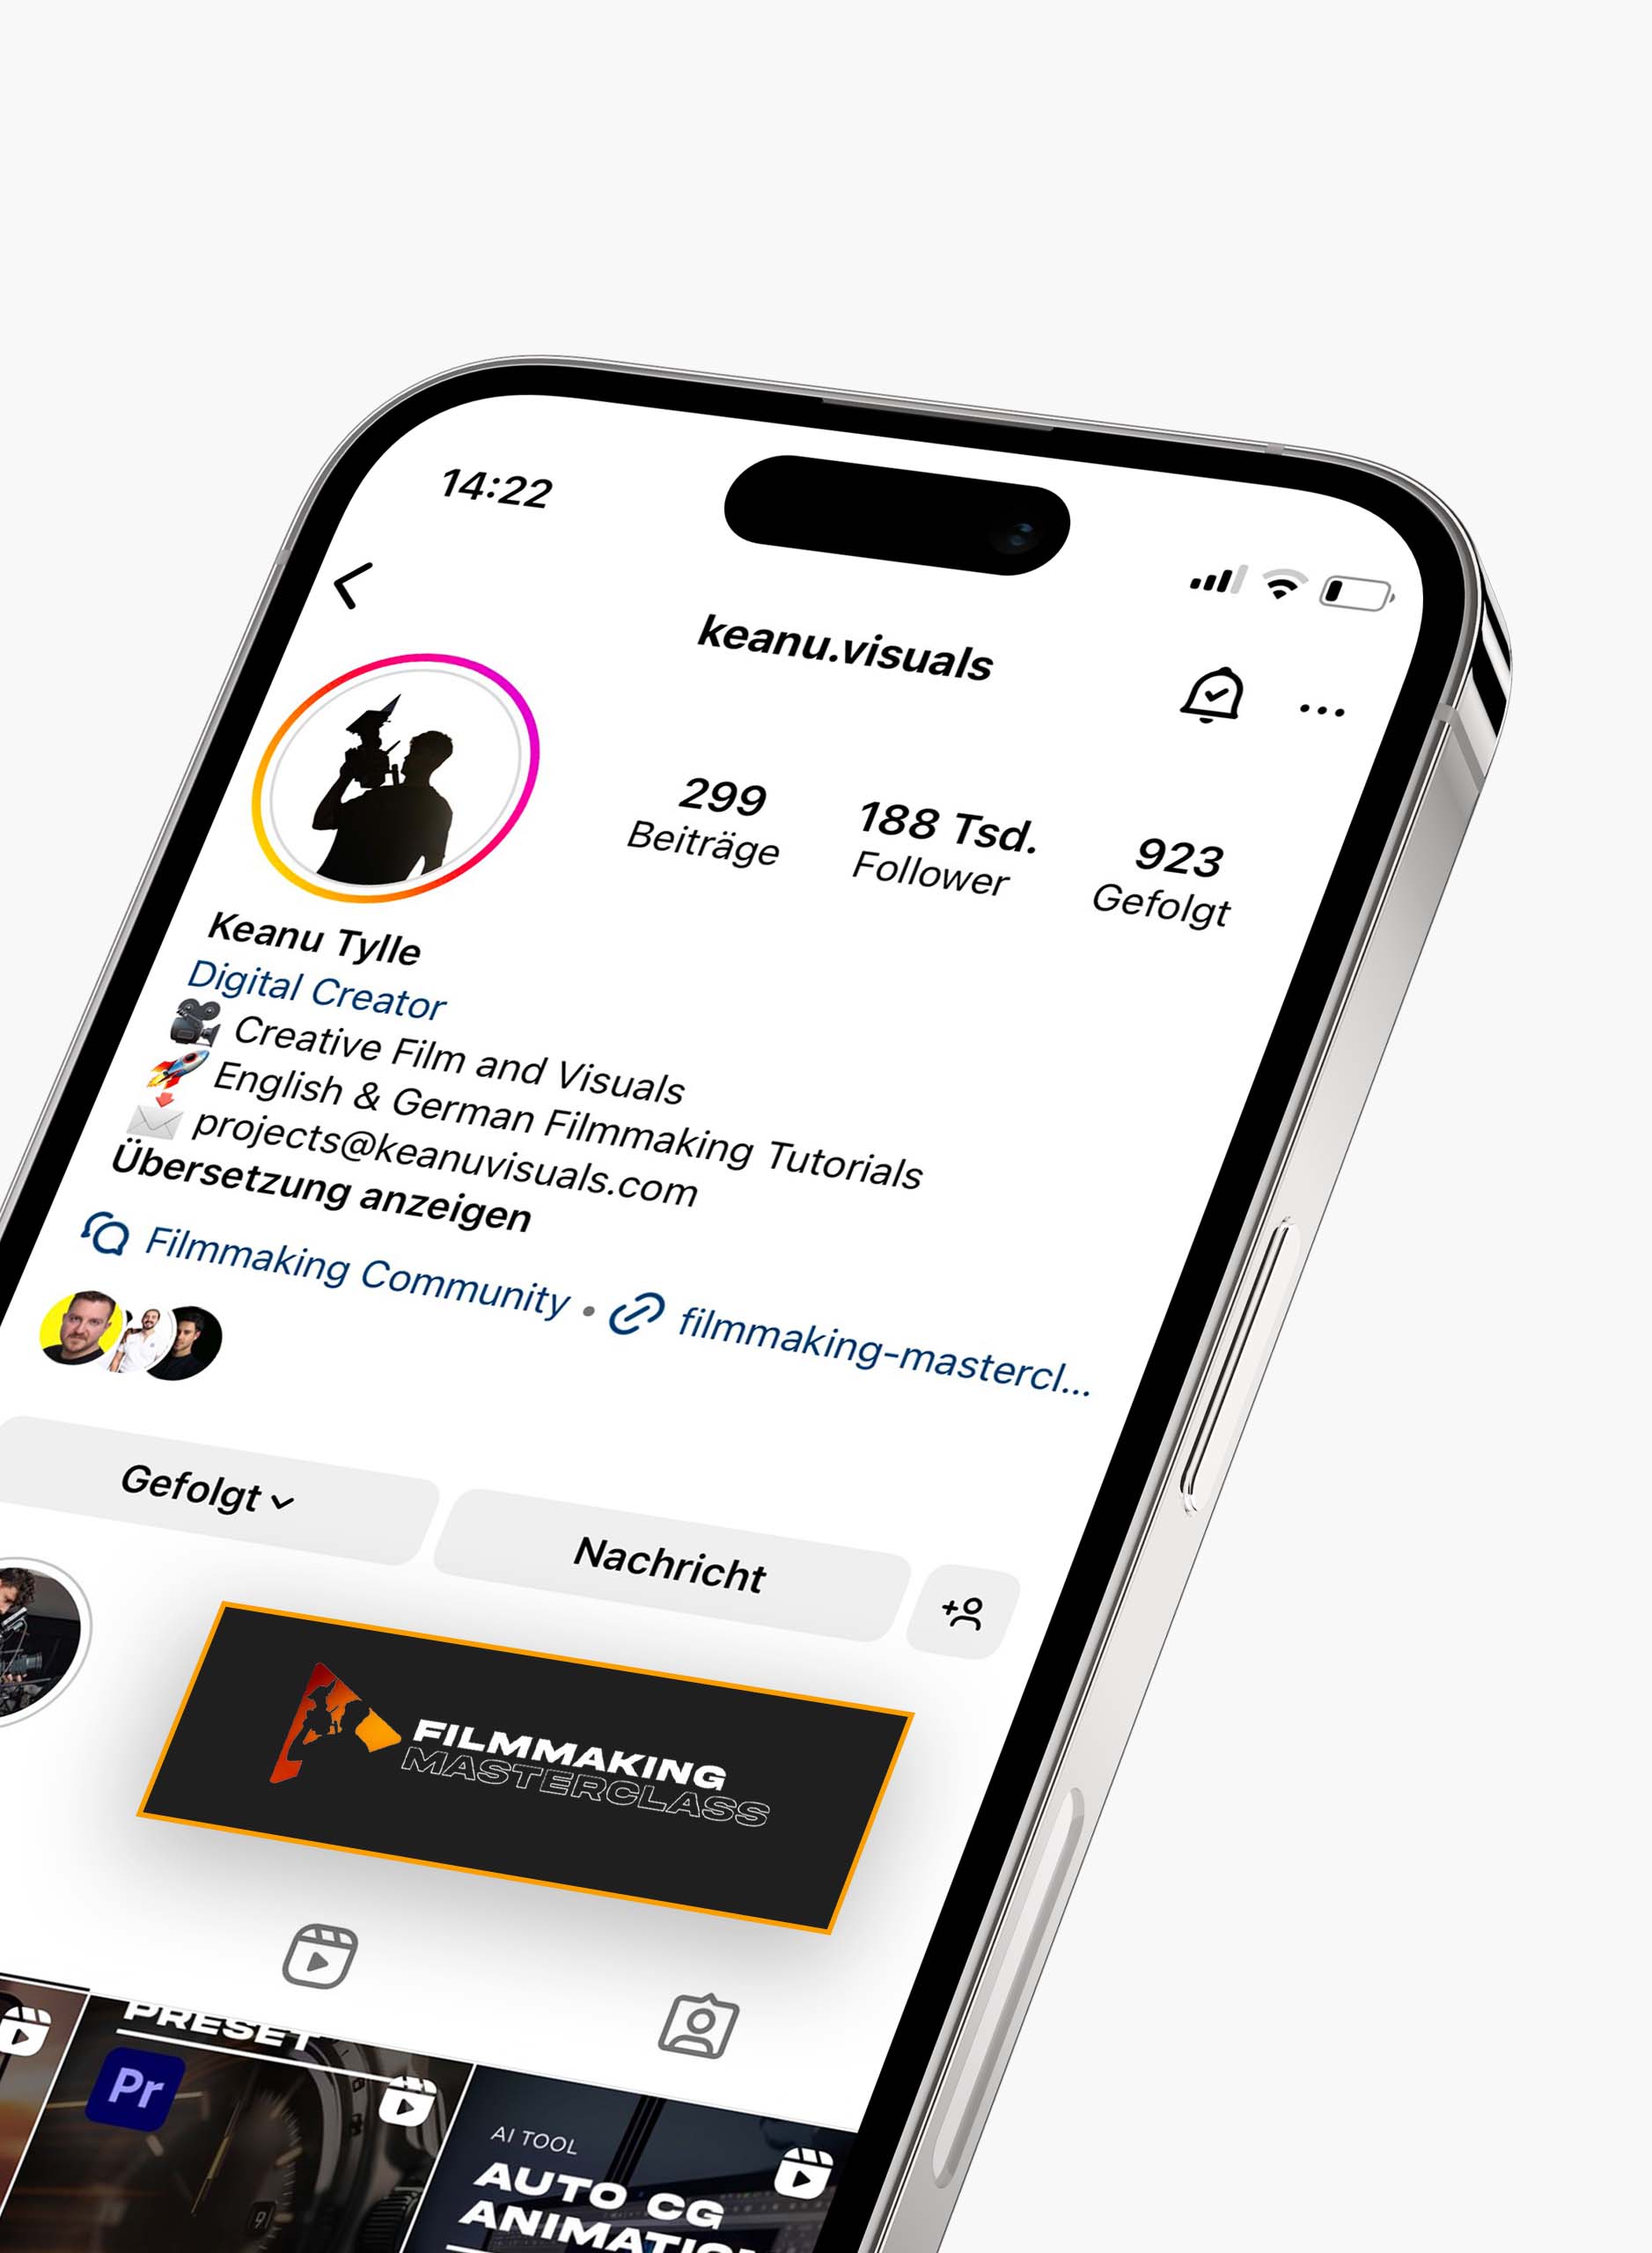 Keanu.visuals Instagram Account auf iPhone